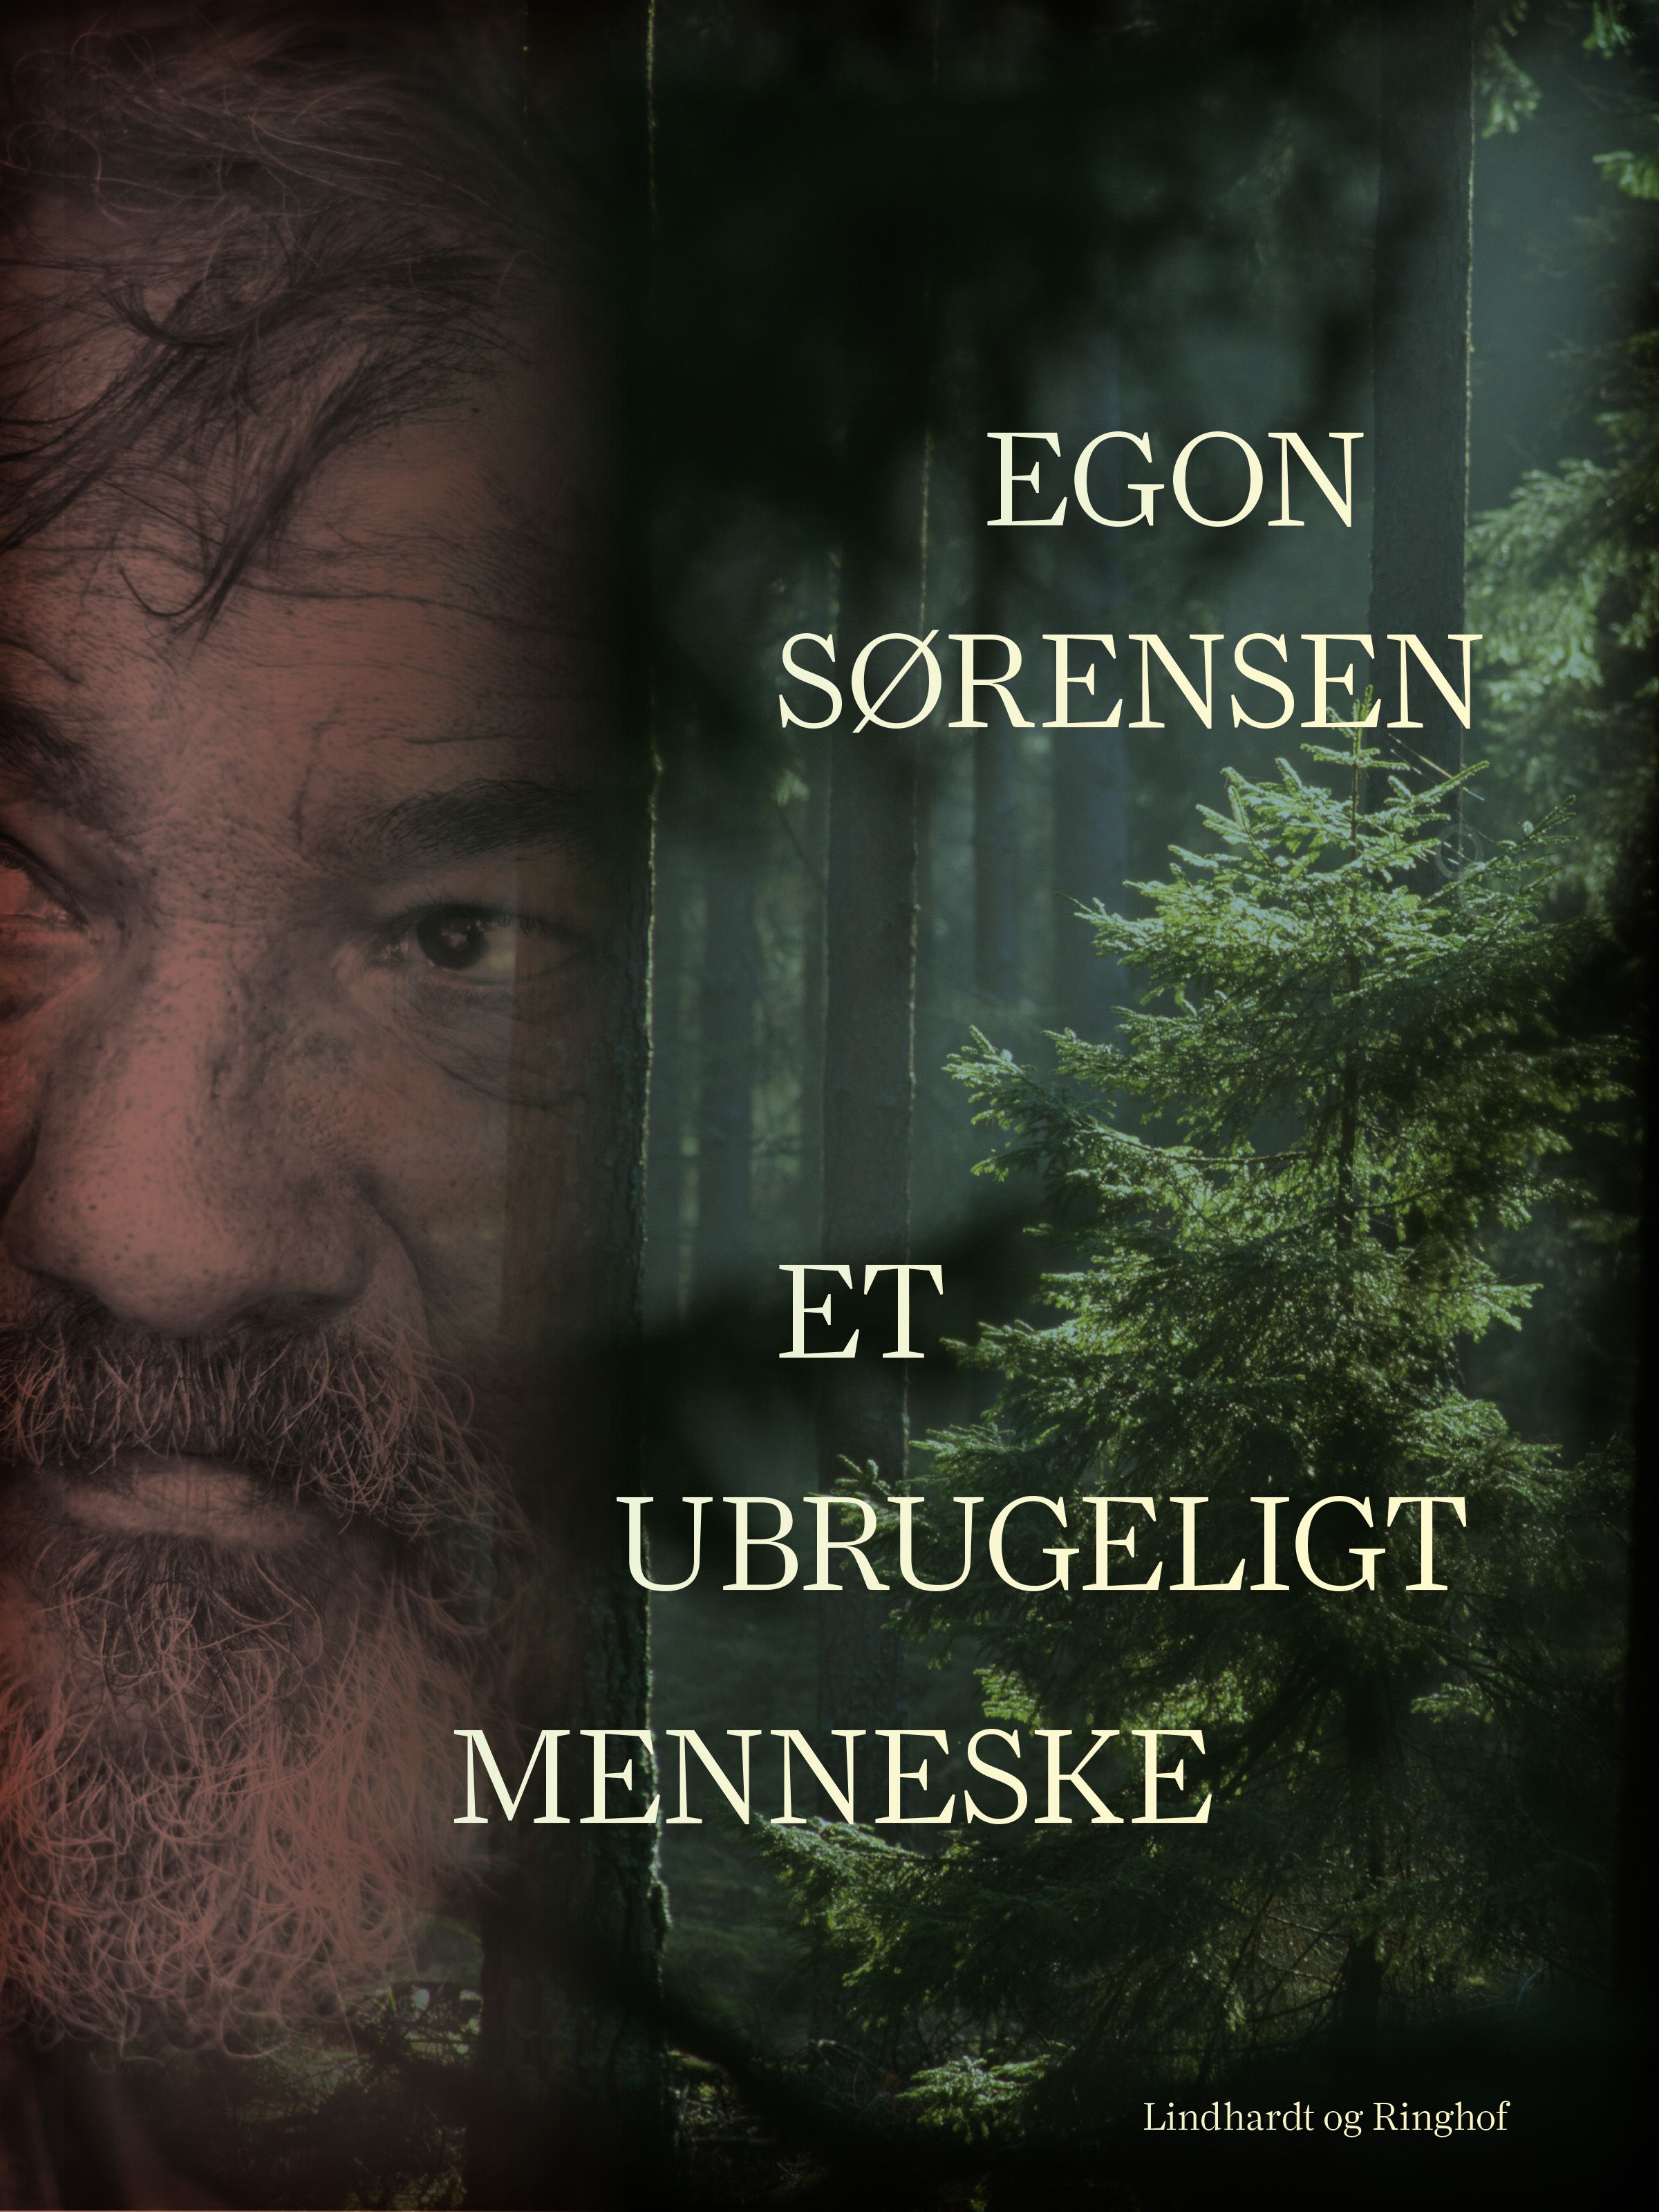 Et ubrugeligt menneske, eBook by Egon Sørensen